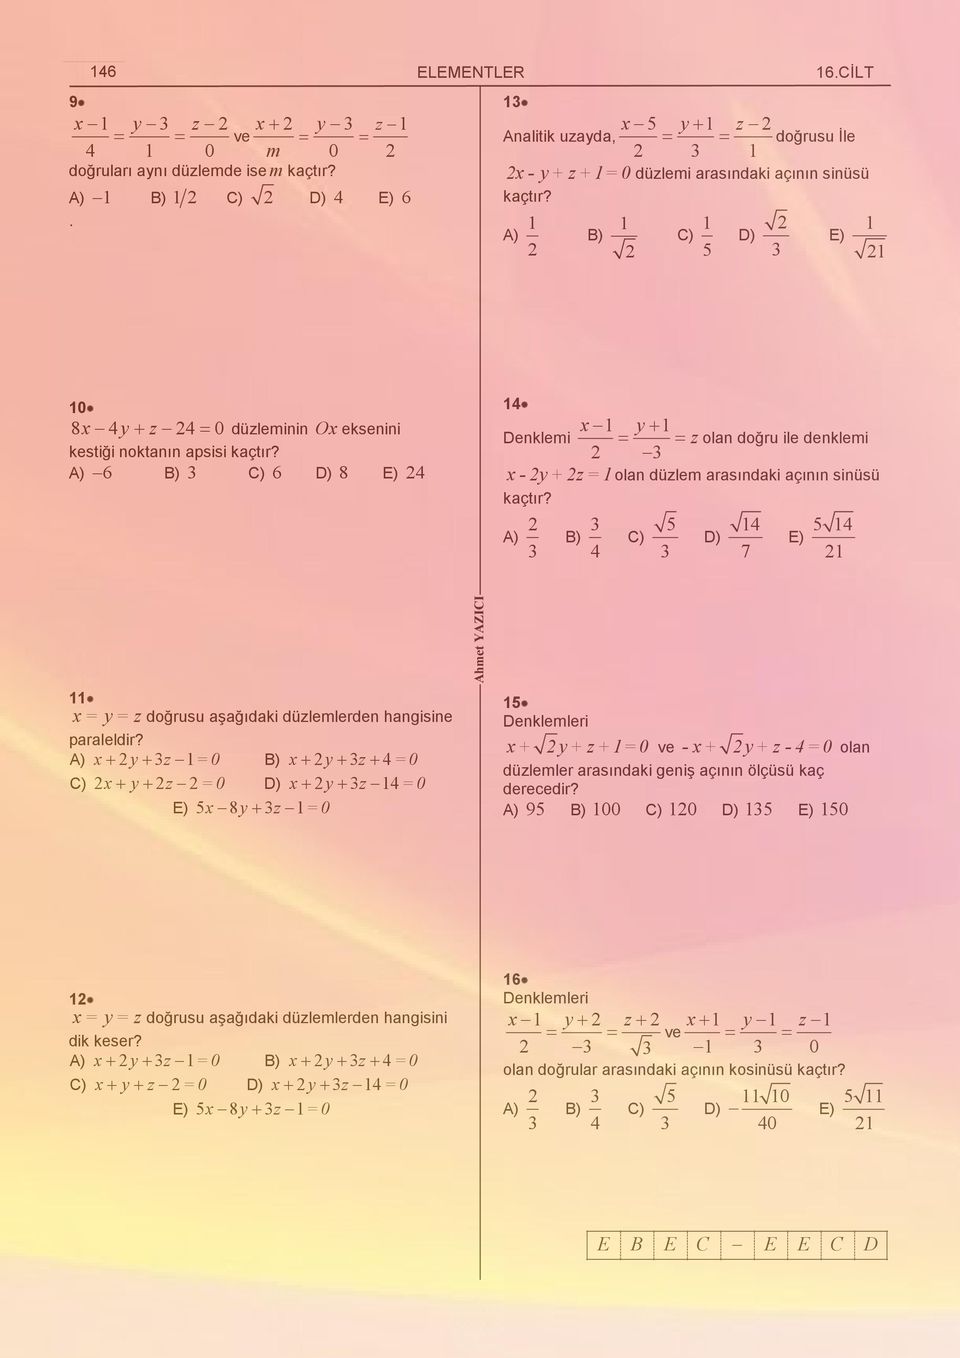 ) ) ) 5 D) 1 7 E) 5 1 1 11 = = z doğrusu aşağıdaki düzlemlerden hangisine paraleldir?